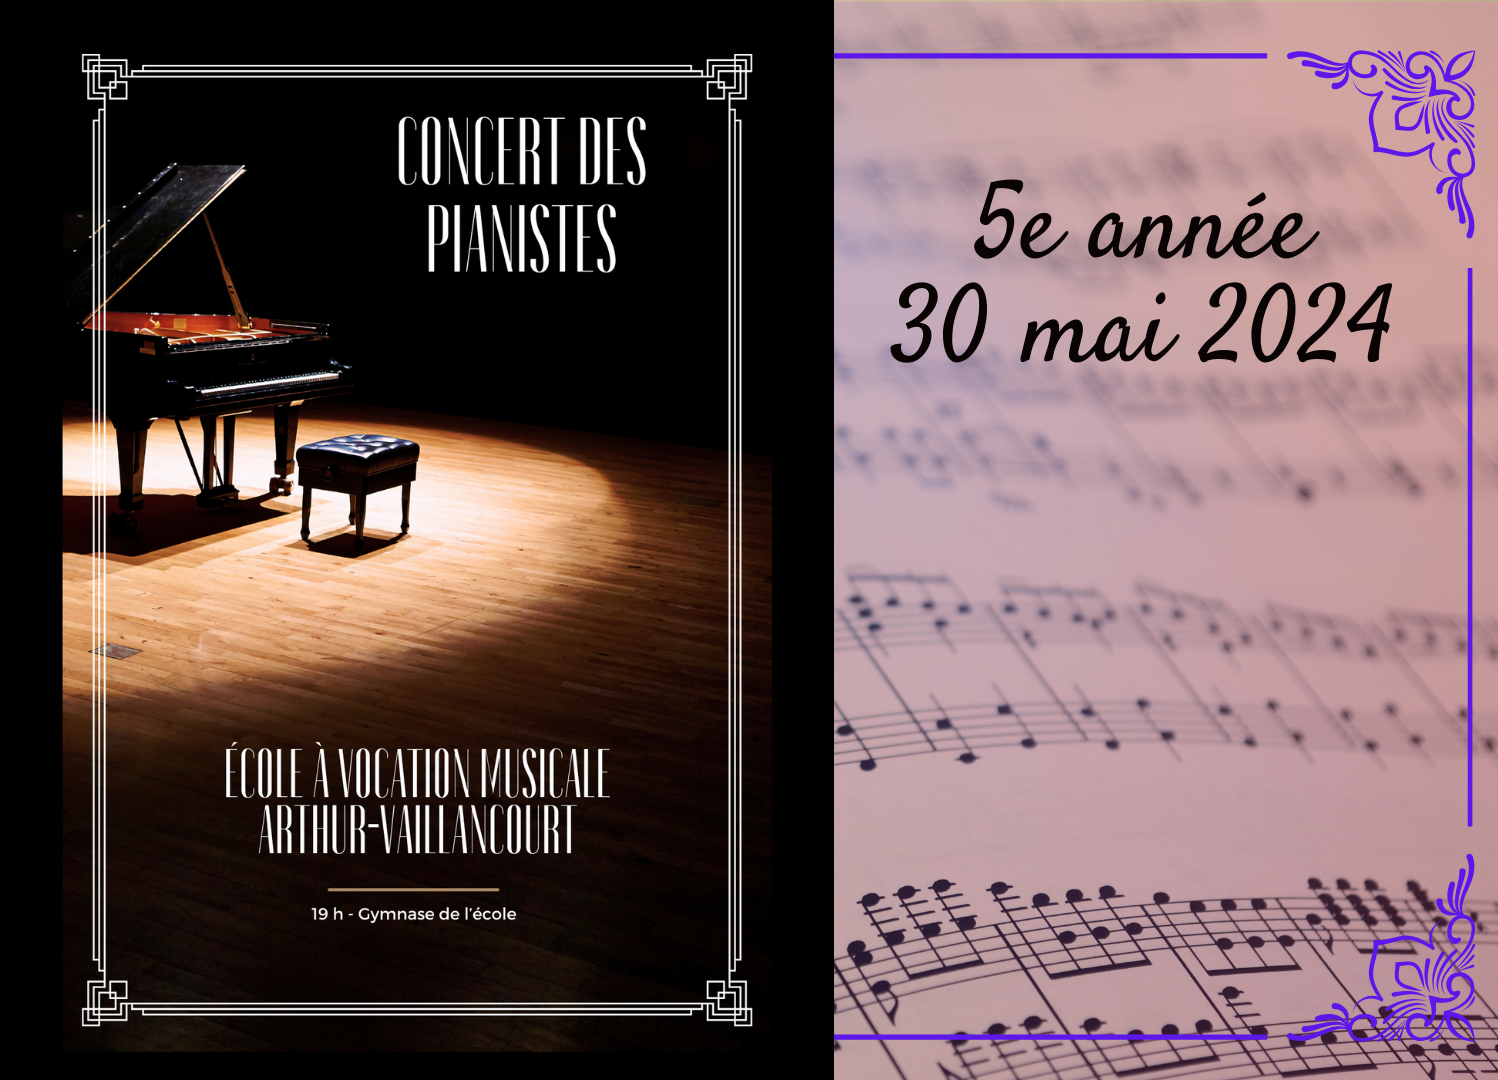 Concert de piano - 5e année (30 mai 2024)